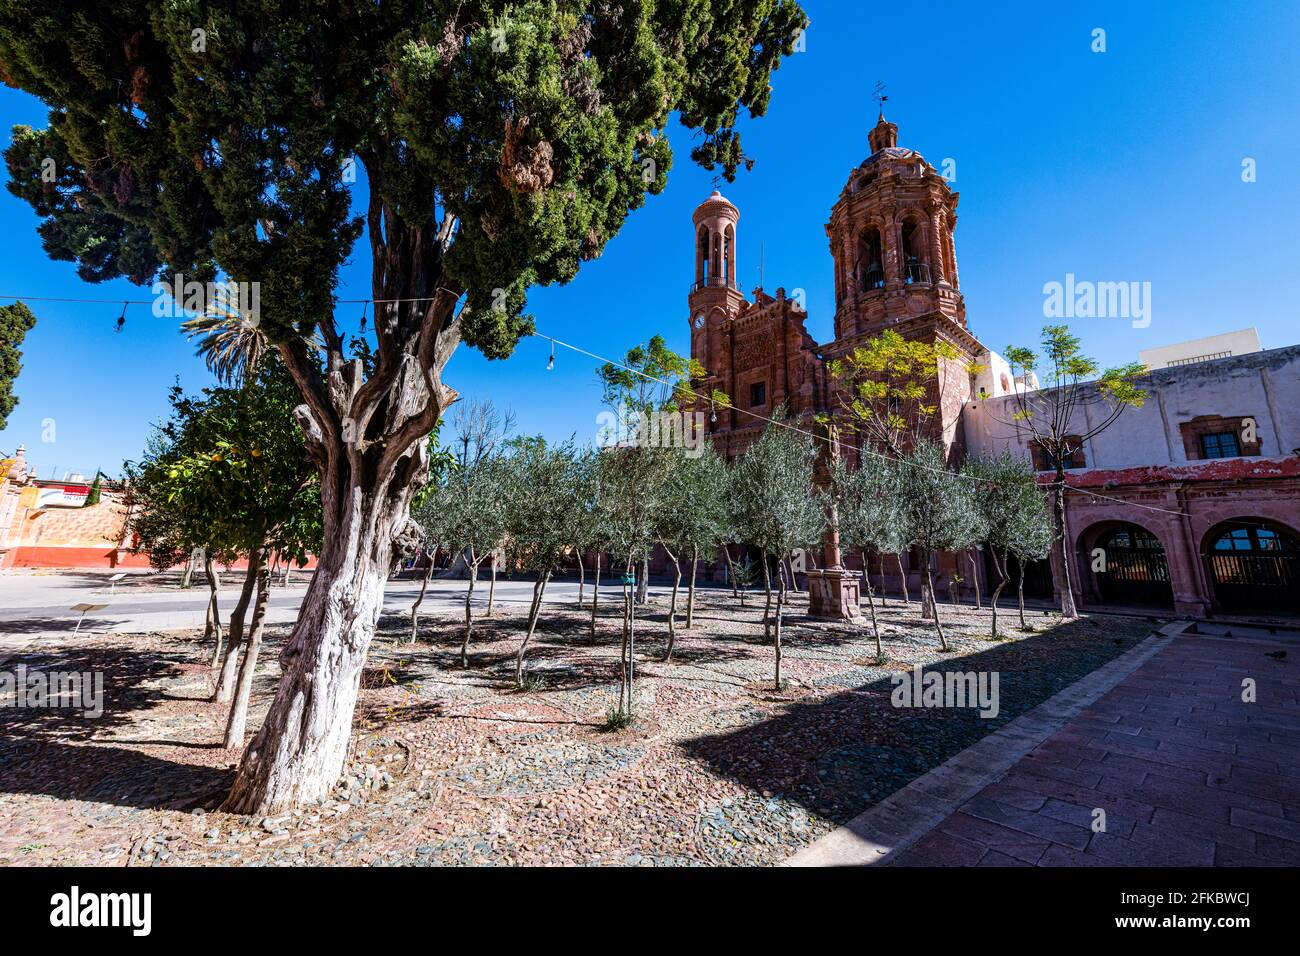 Monastère Franciscano de Nuestra Senora de Guadalupe, site classé au patrimoine mondial de l'UNESCO, Zacatecas, Mexique, Amérique du Nord Banque D'Images